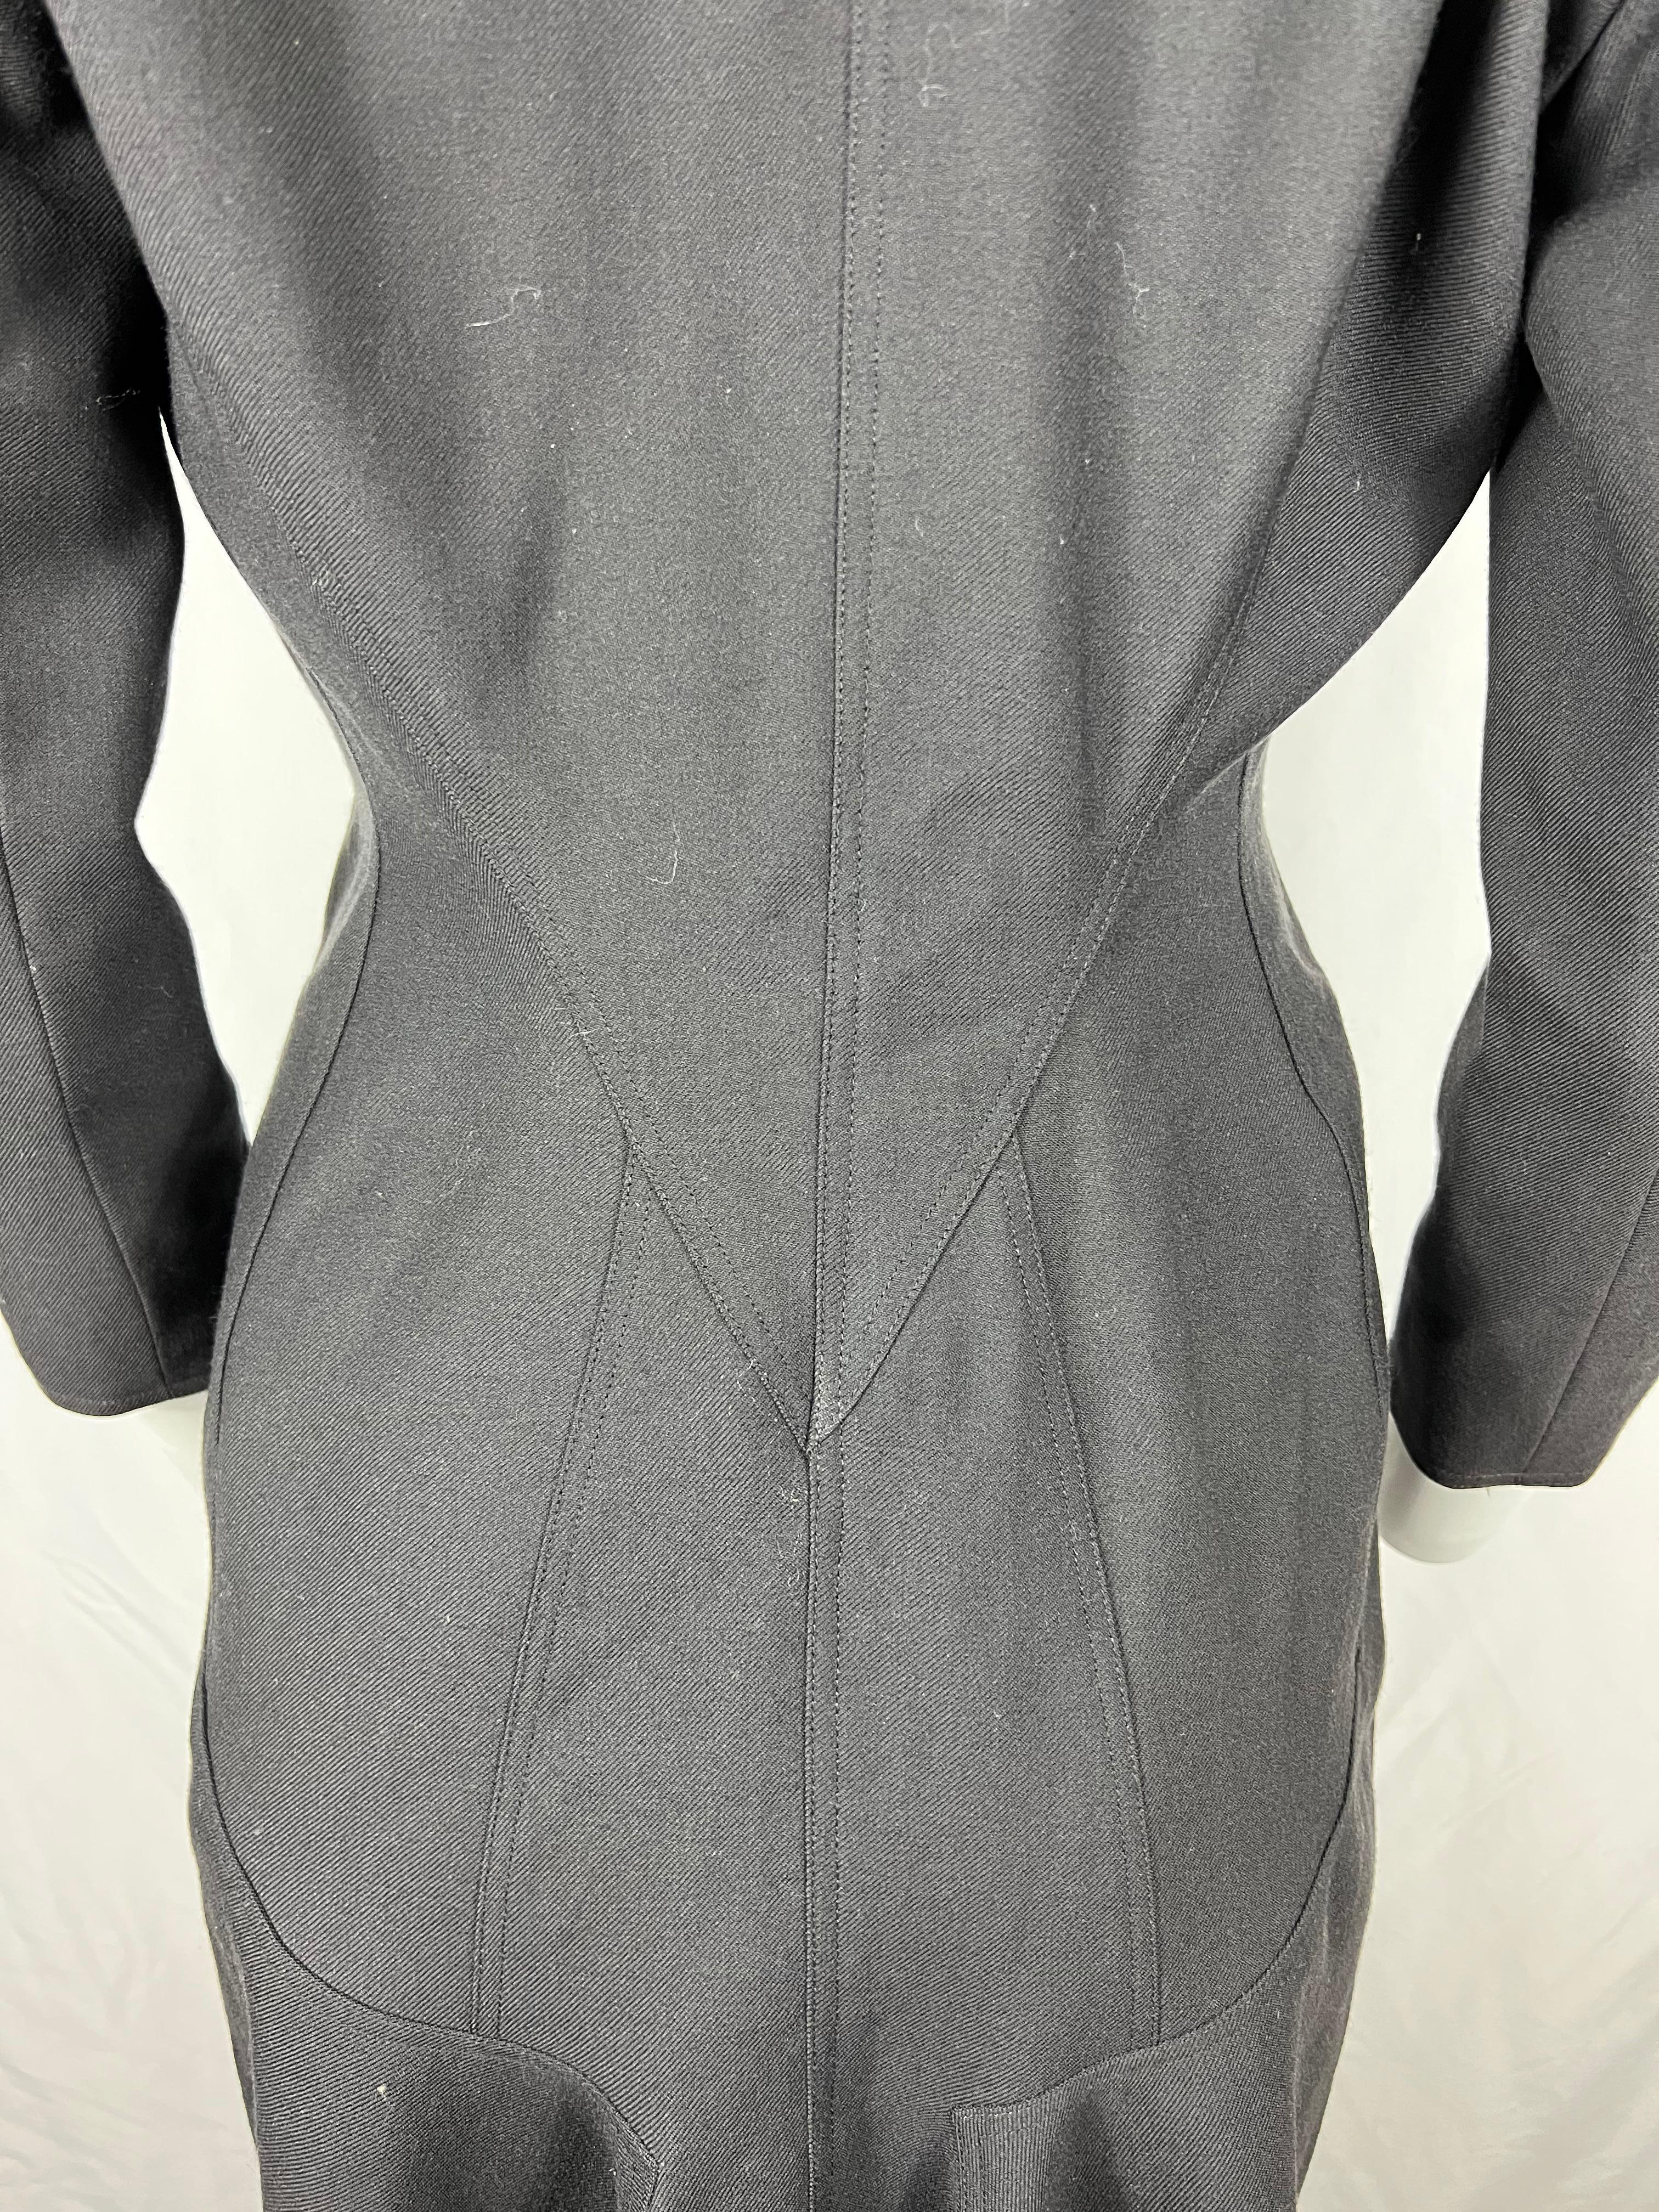 Vintage Alaïa Wool Coat Dark Grey, Size 8 For Sale 1